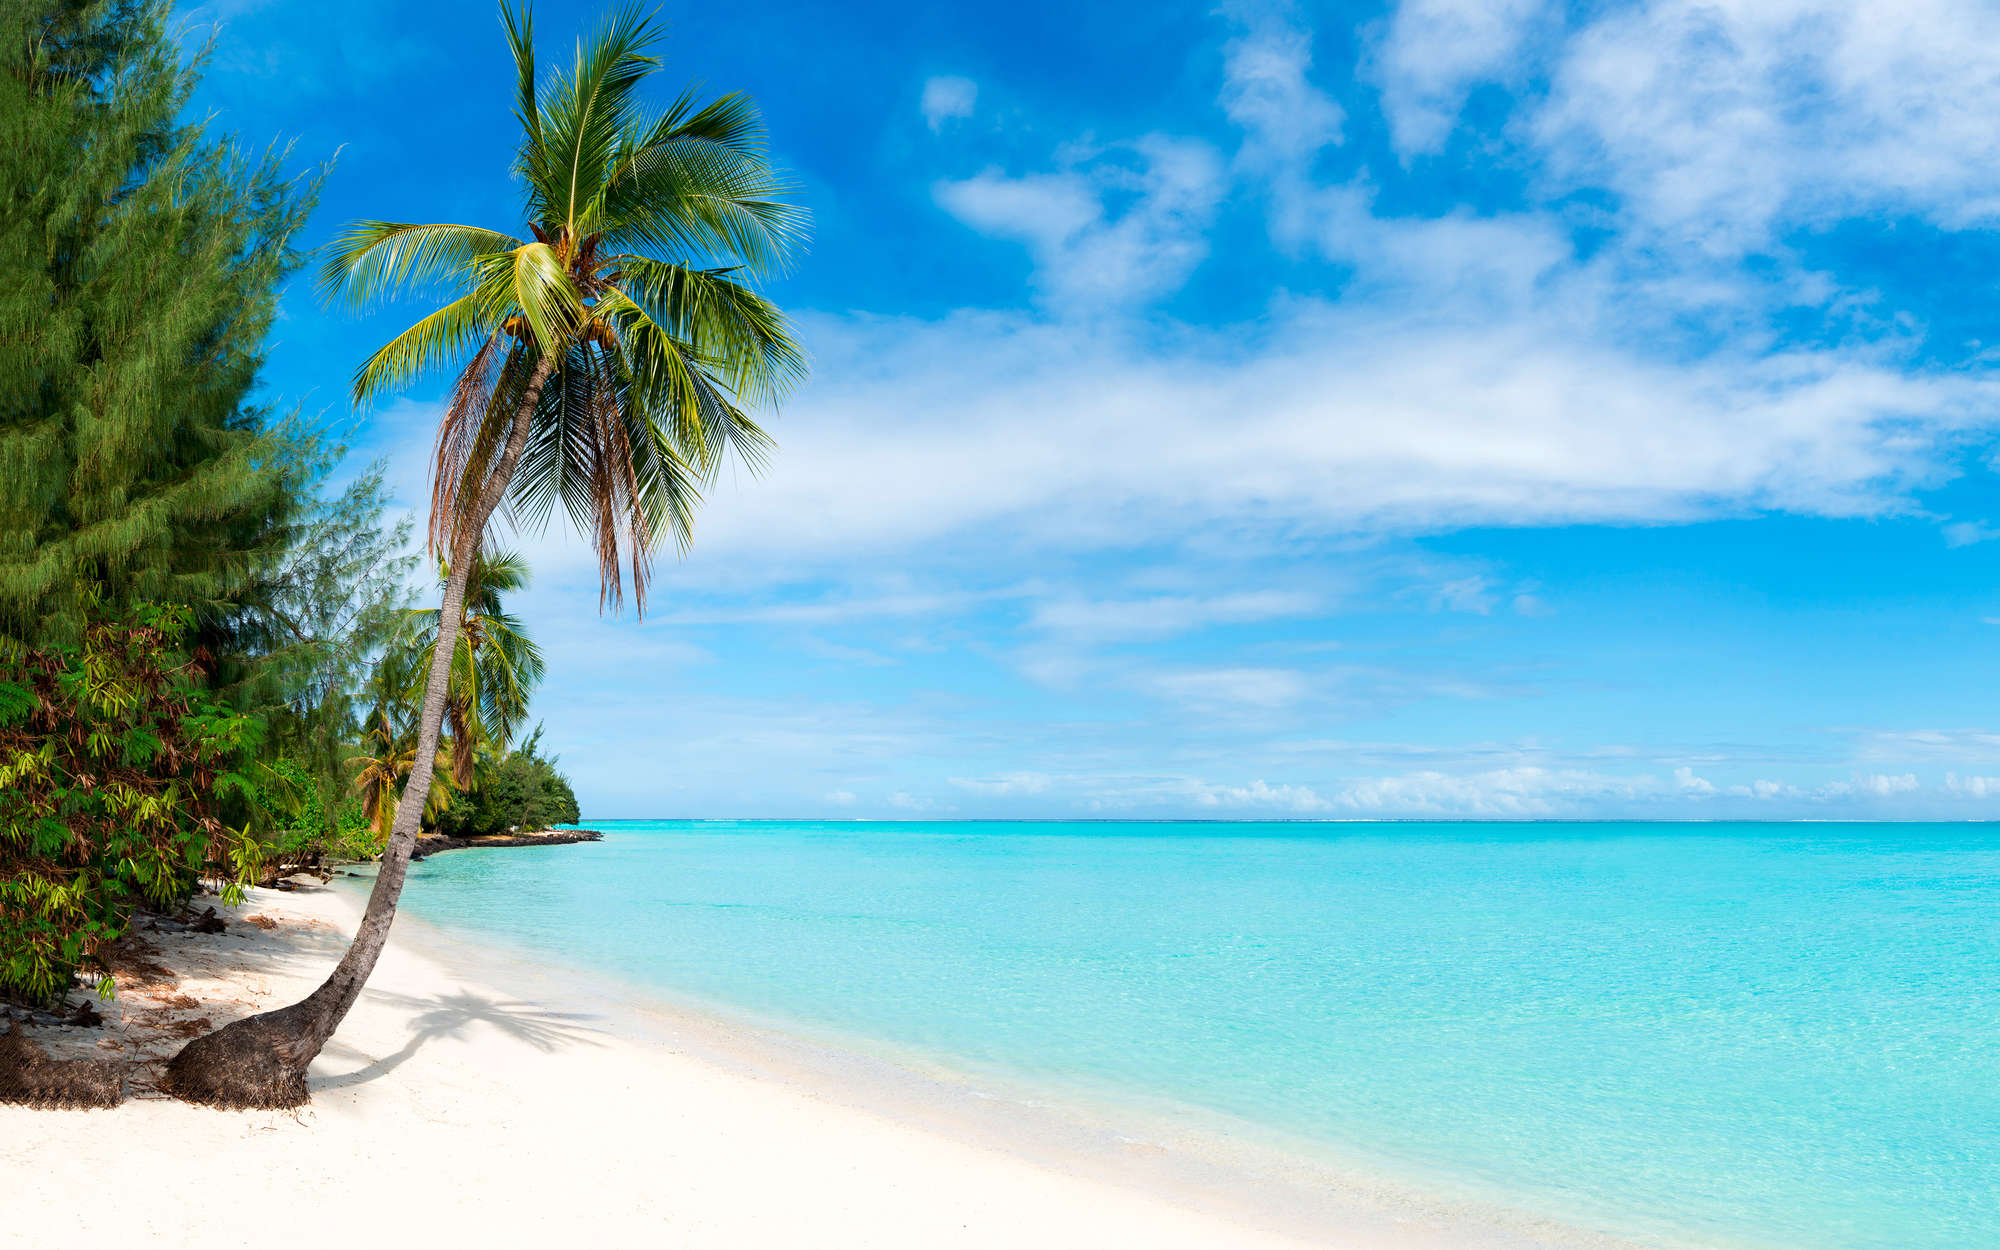             Fotomurali spiaggia sabbiosa con palma - Pile liscio opaco
        